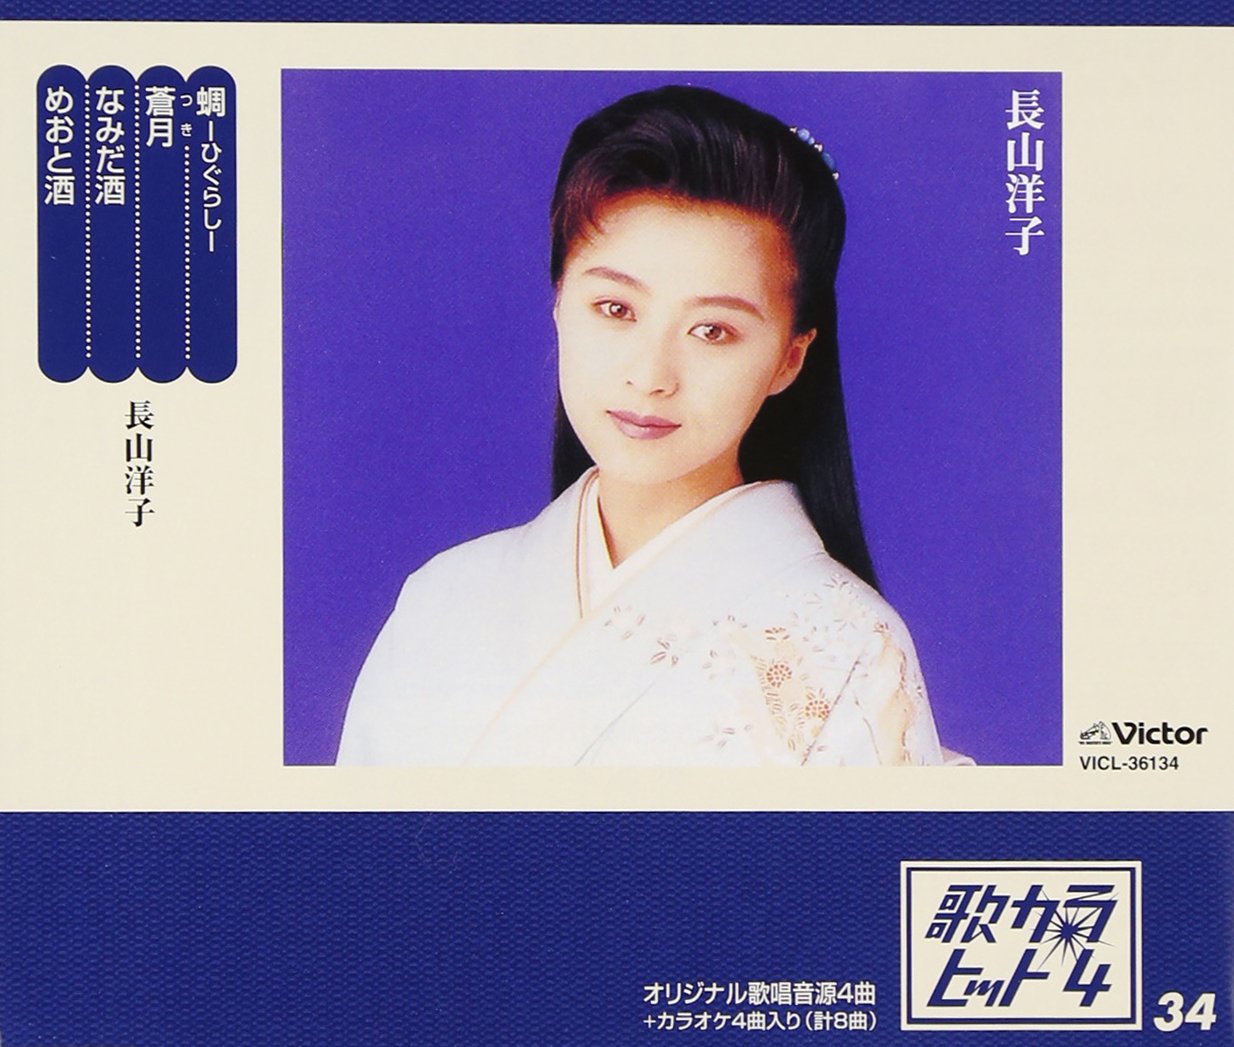 長山洋子が演歌歌手デビューすぐの1994年に来日、デビュー当時からファンだった